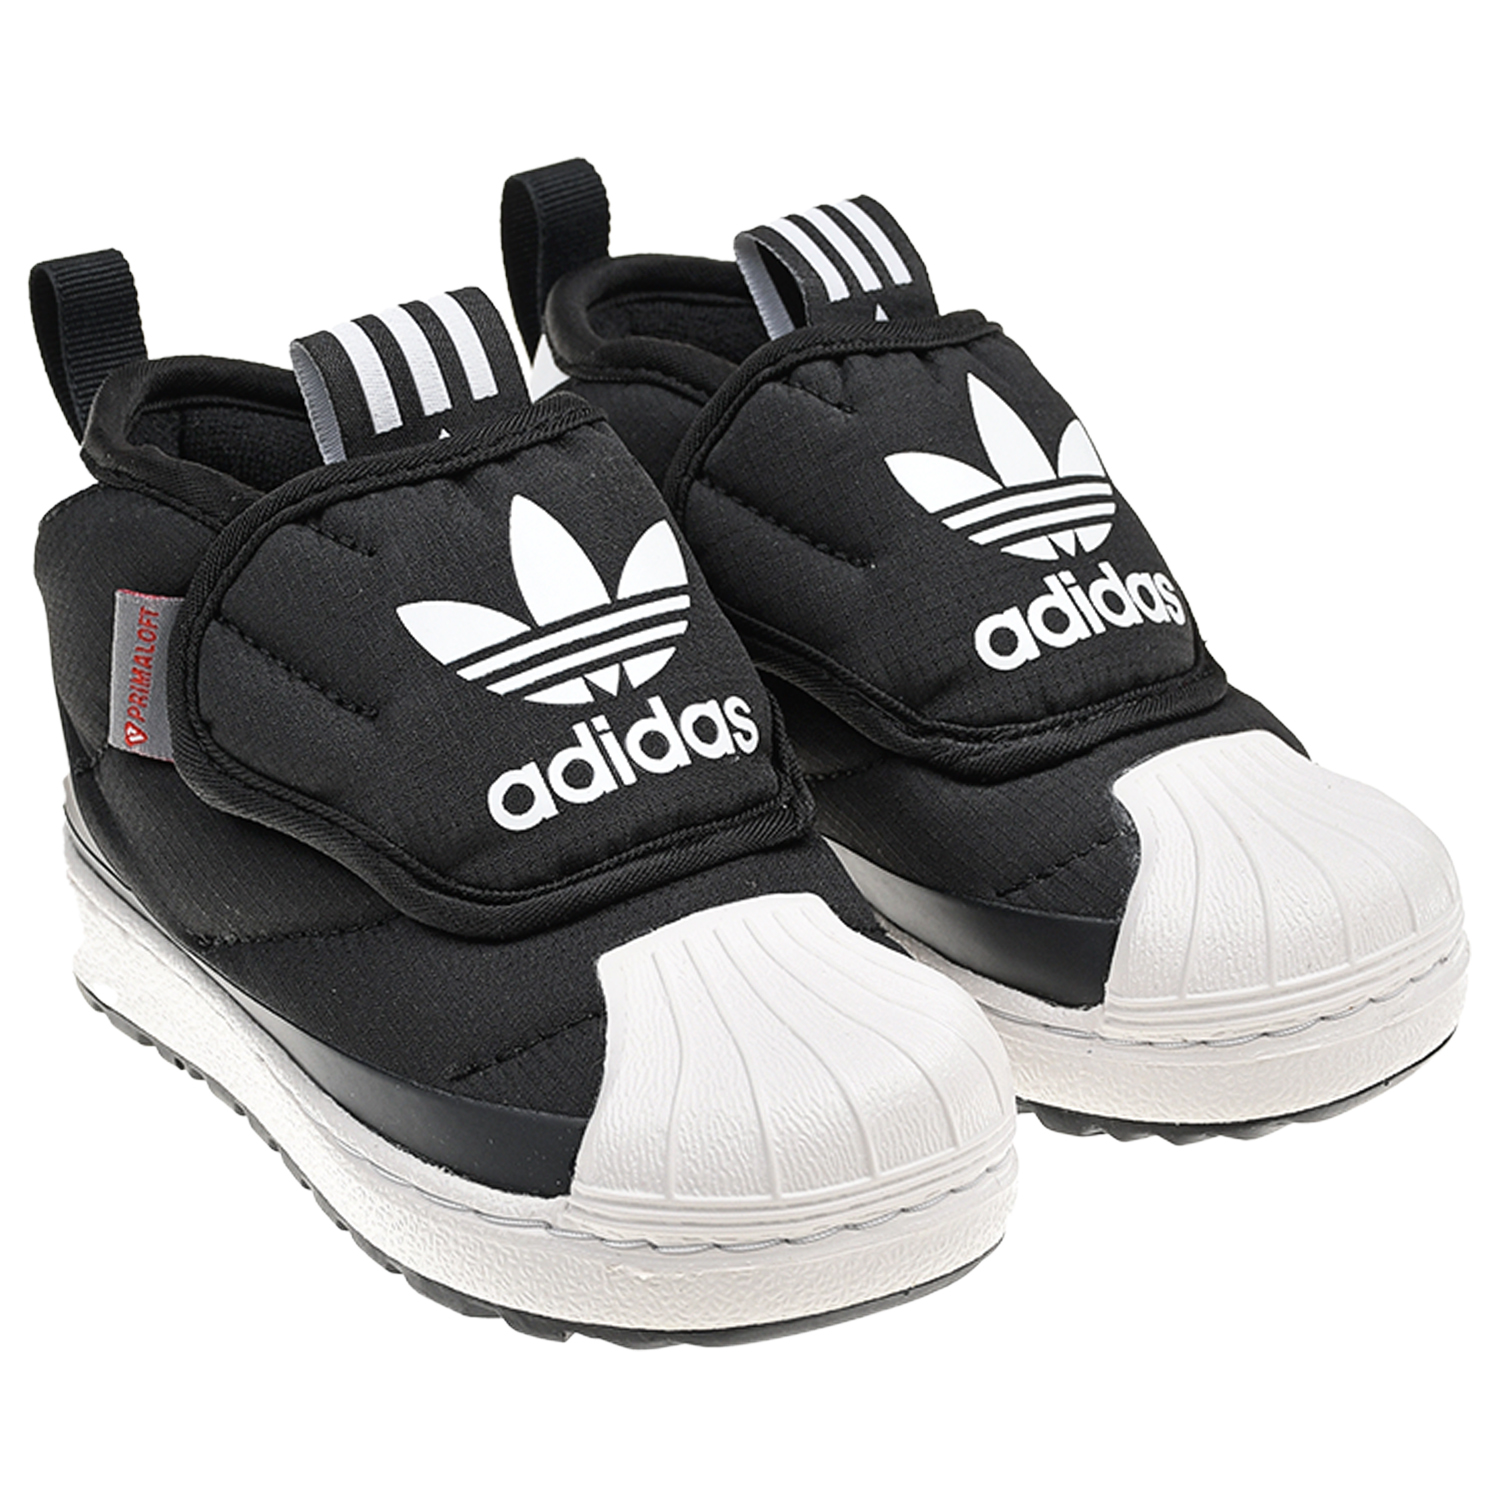 Высокие черные кроссовки с широкой застежкой велкро Adidas детские